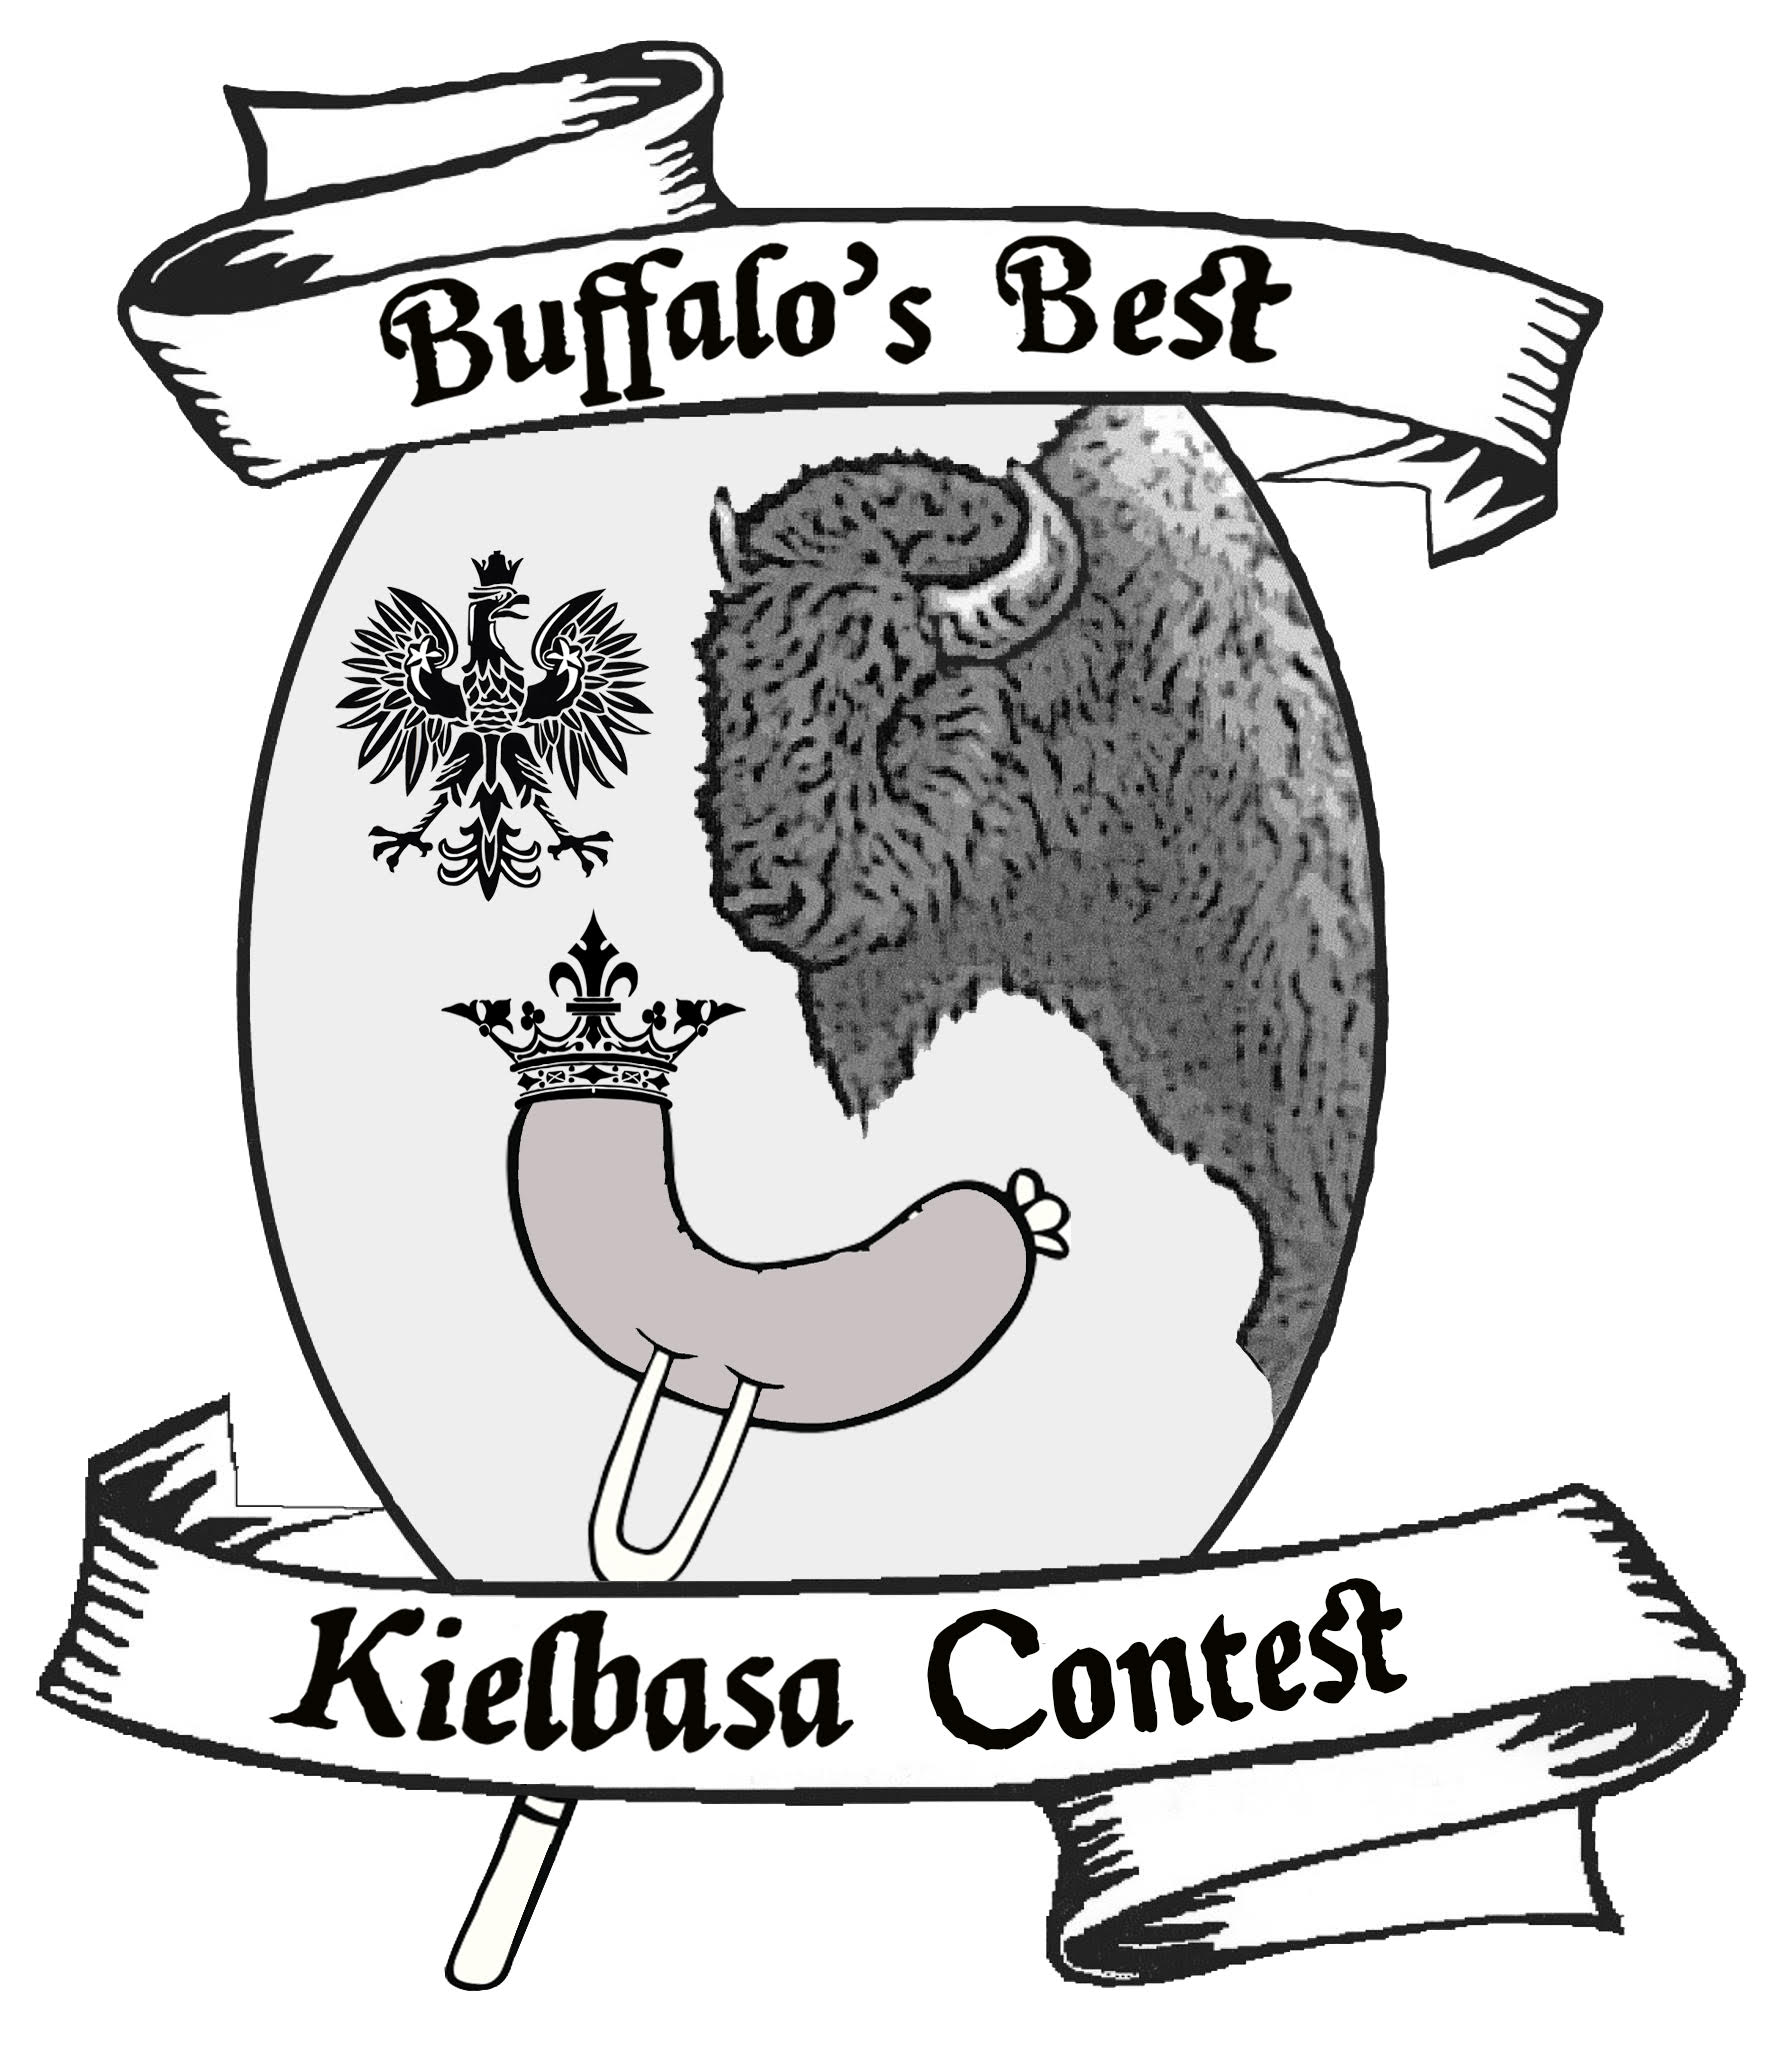 Buffalo's Best Kielbasa (Image courtesy of Tod A. Kniazuk)